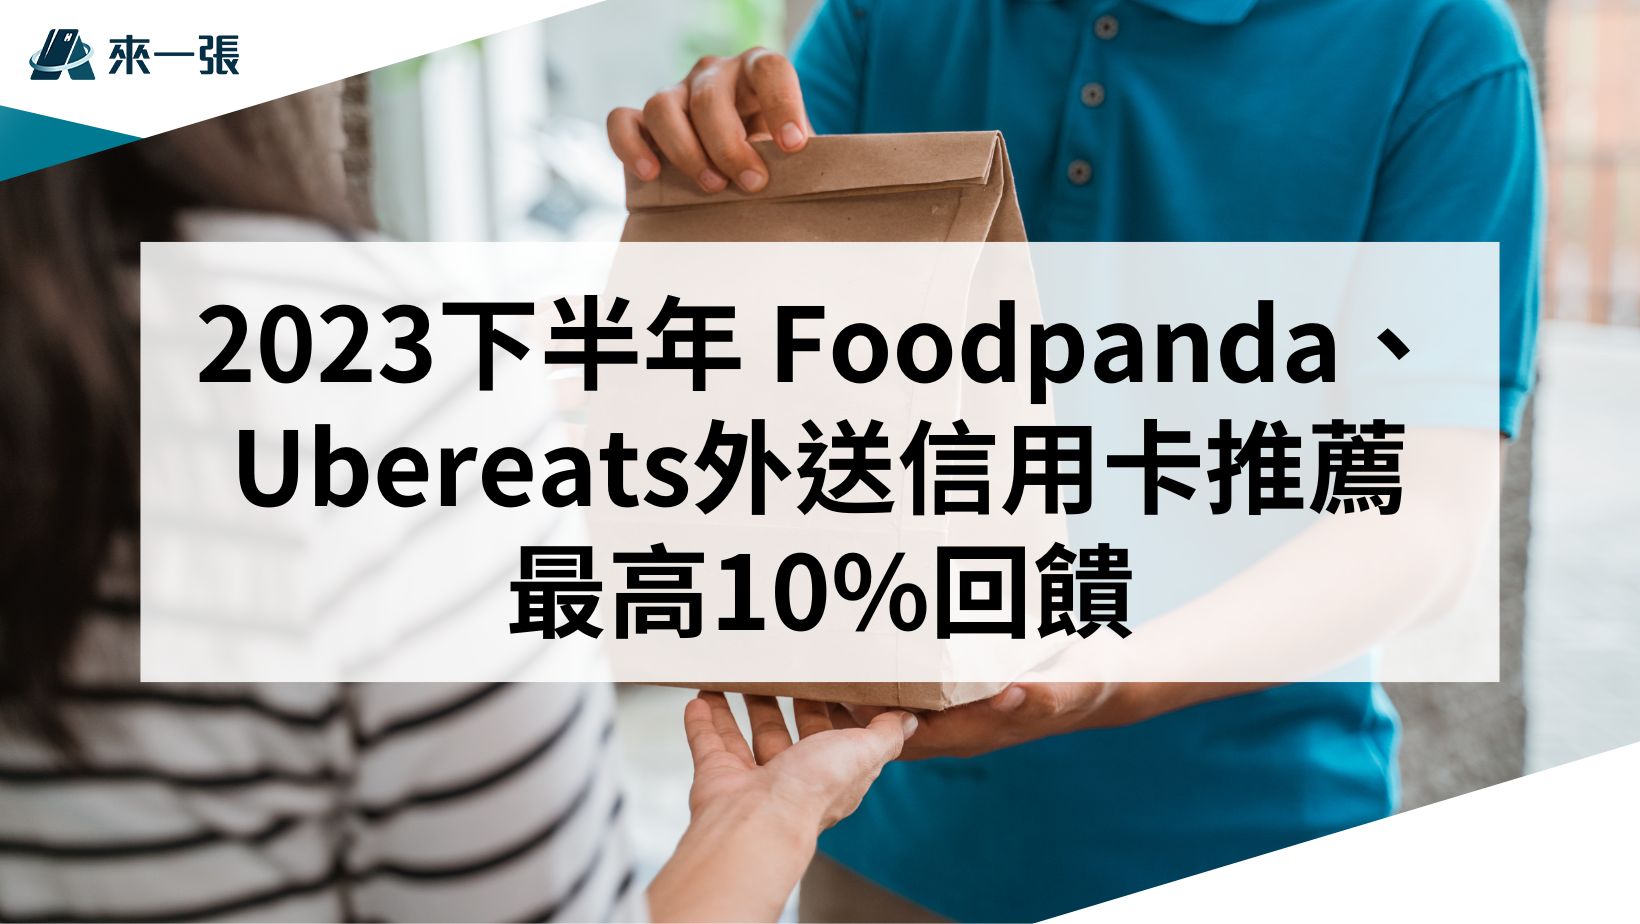 2023下半年 Foodpanda、Ubereats外送信用卡推薦 最高10回饋